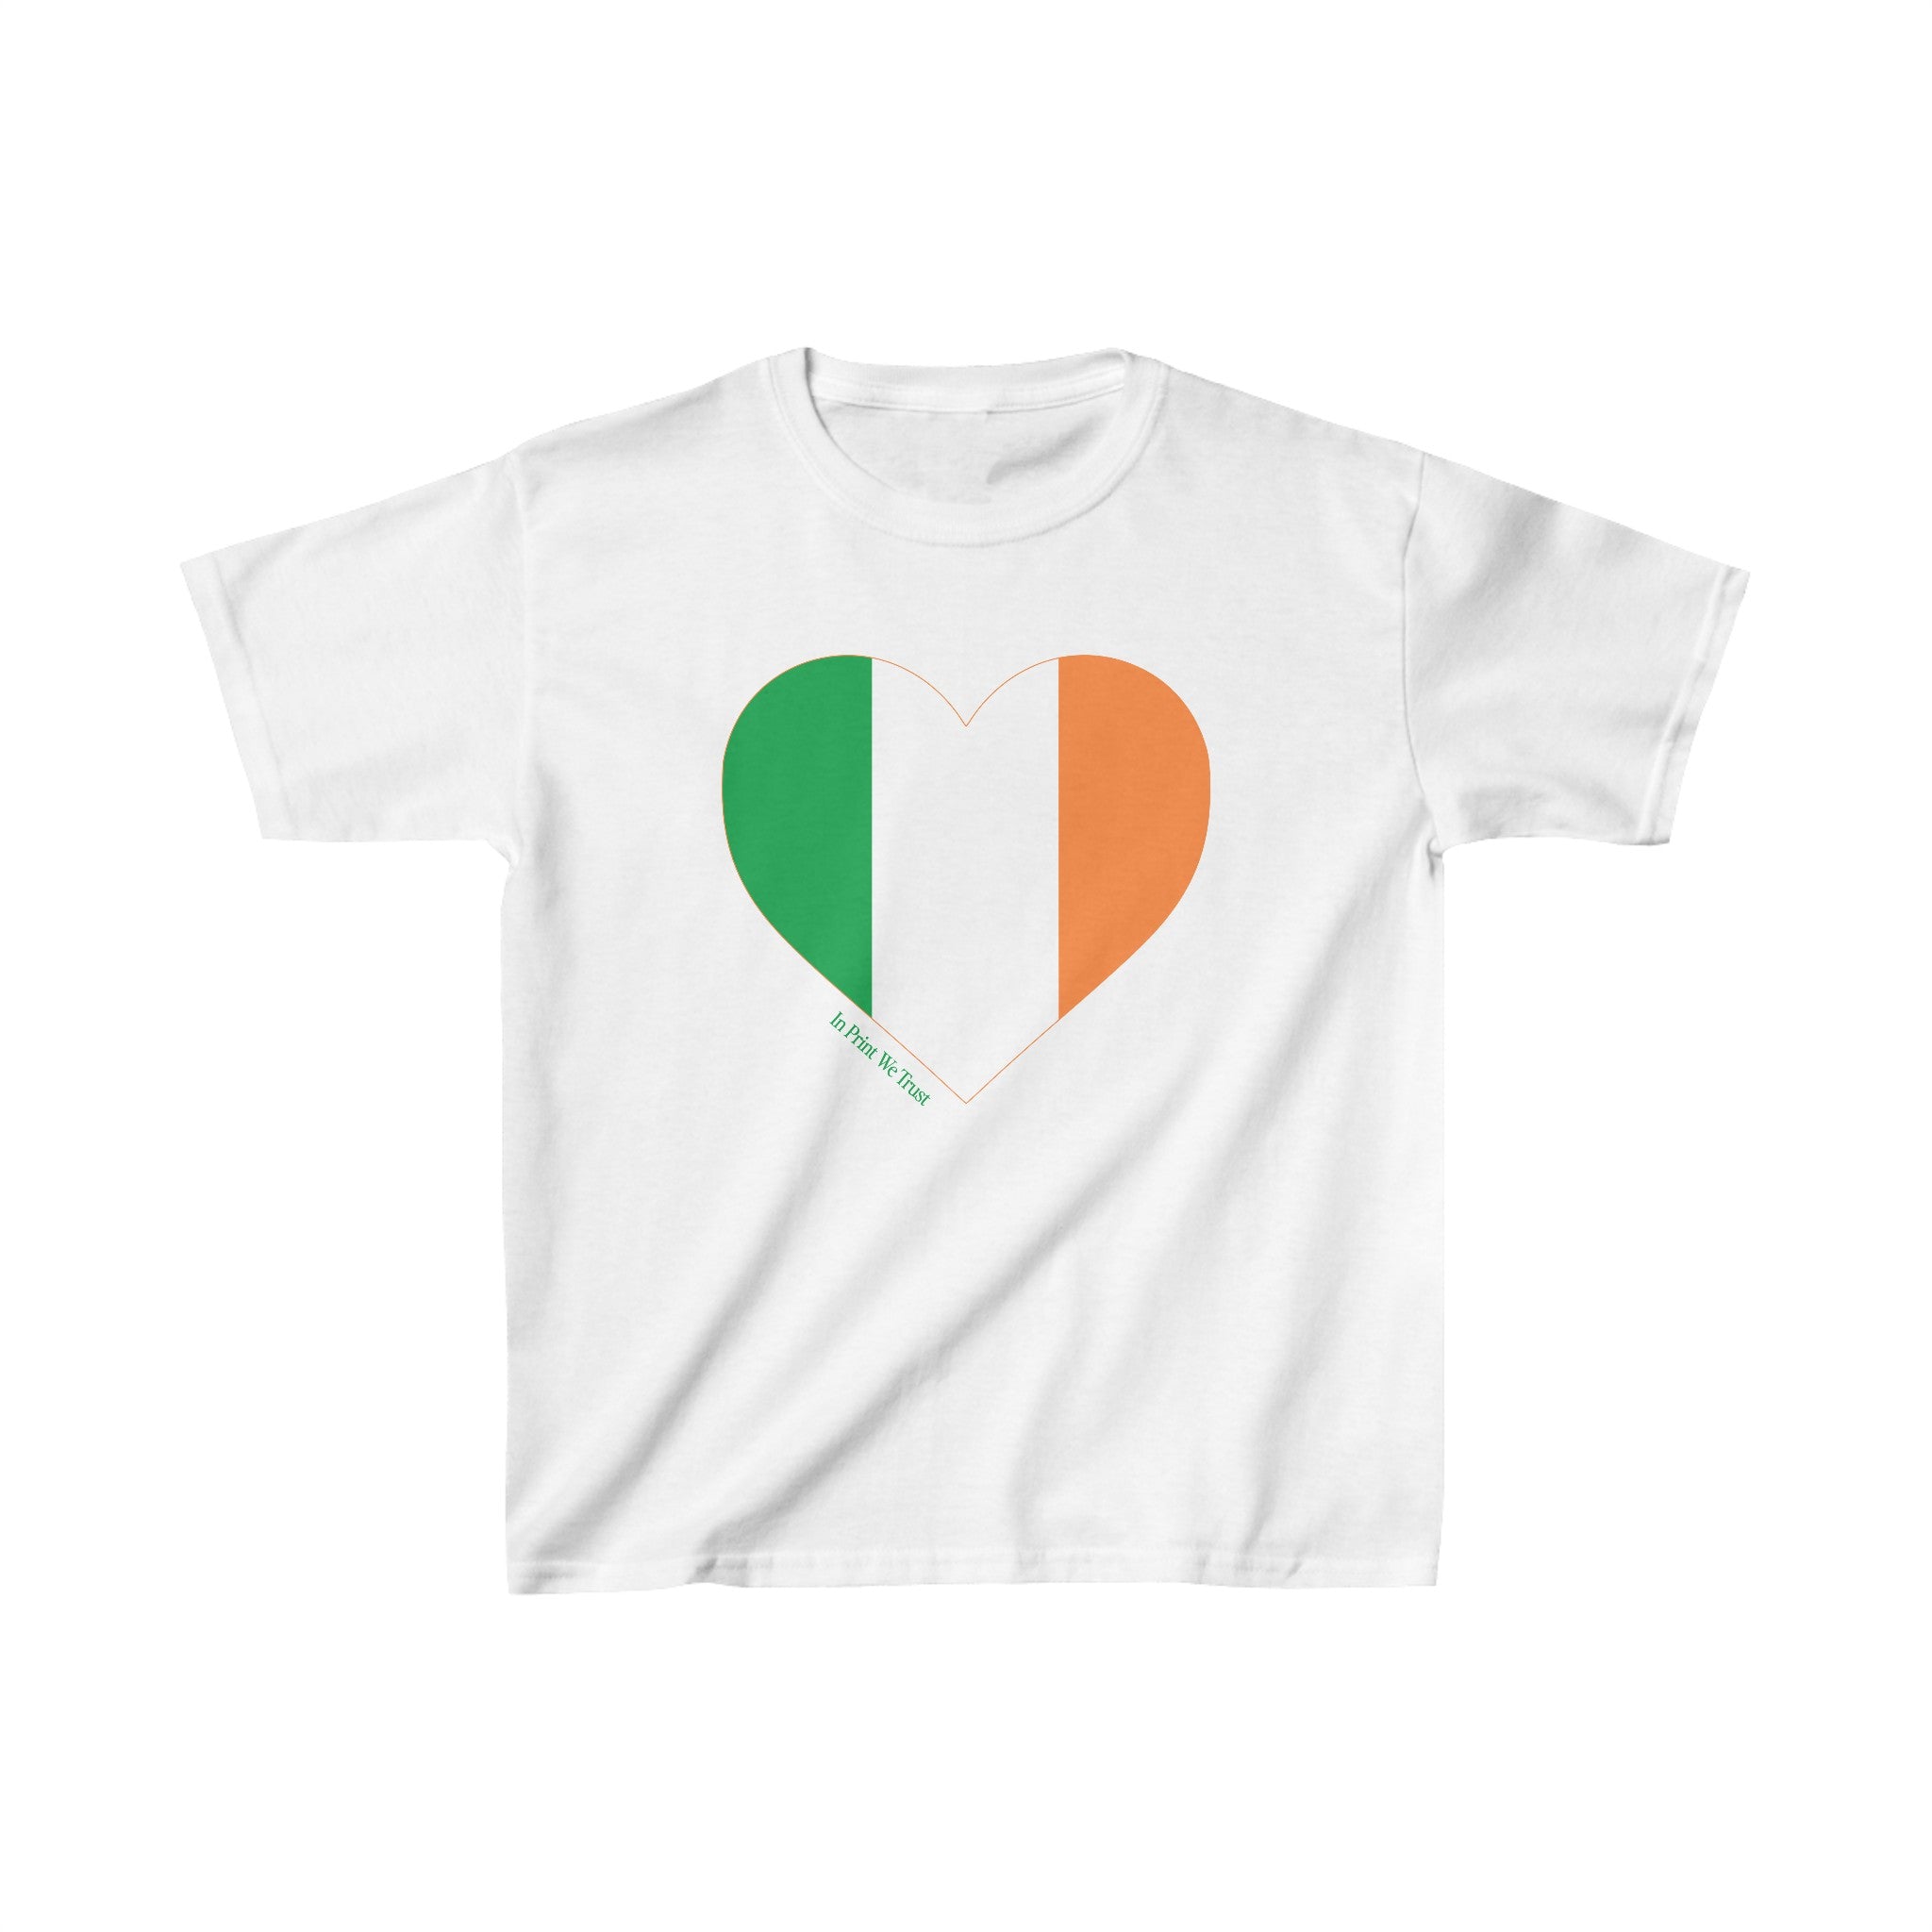 'Ireland' baby tee - In Print We Trust